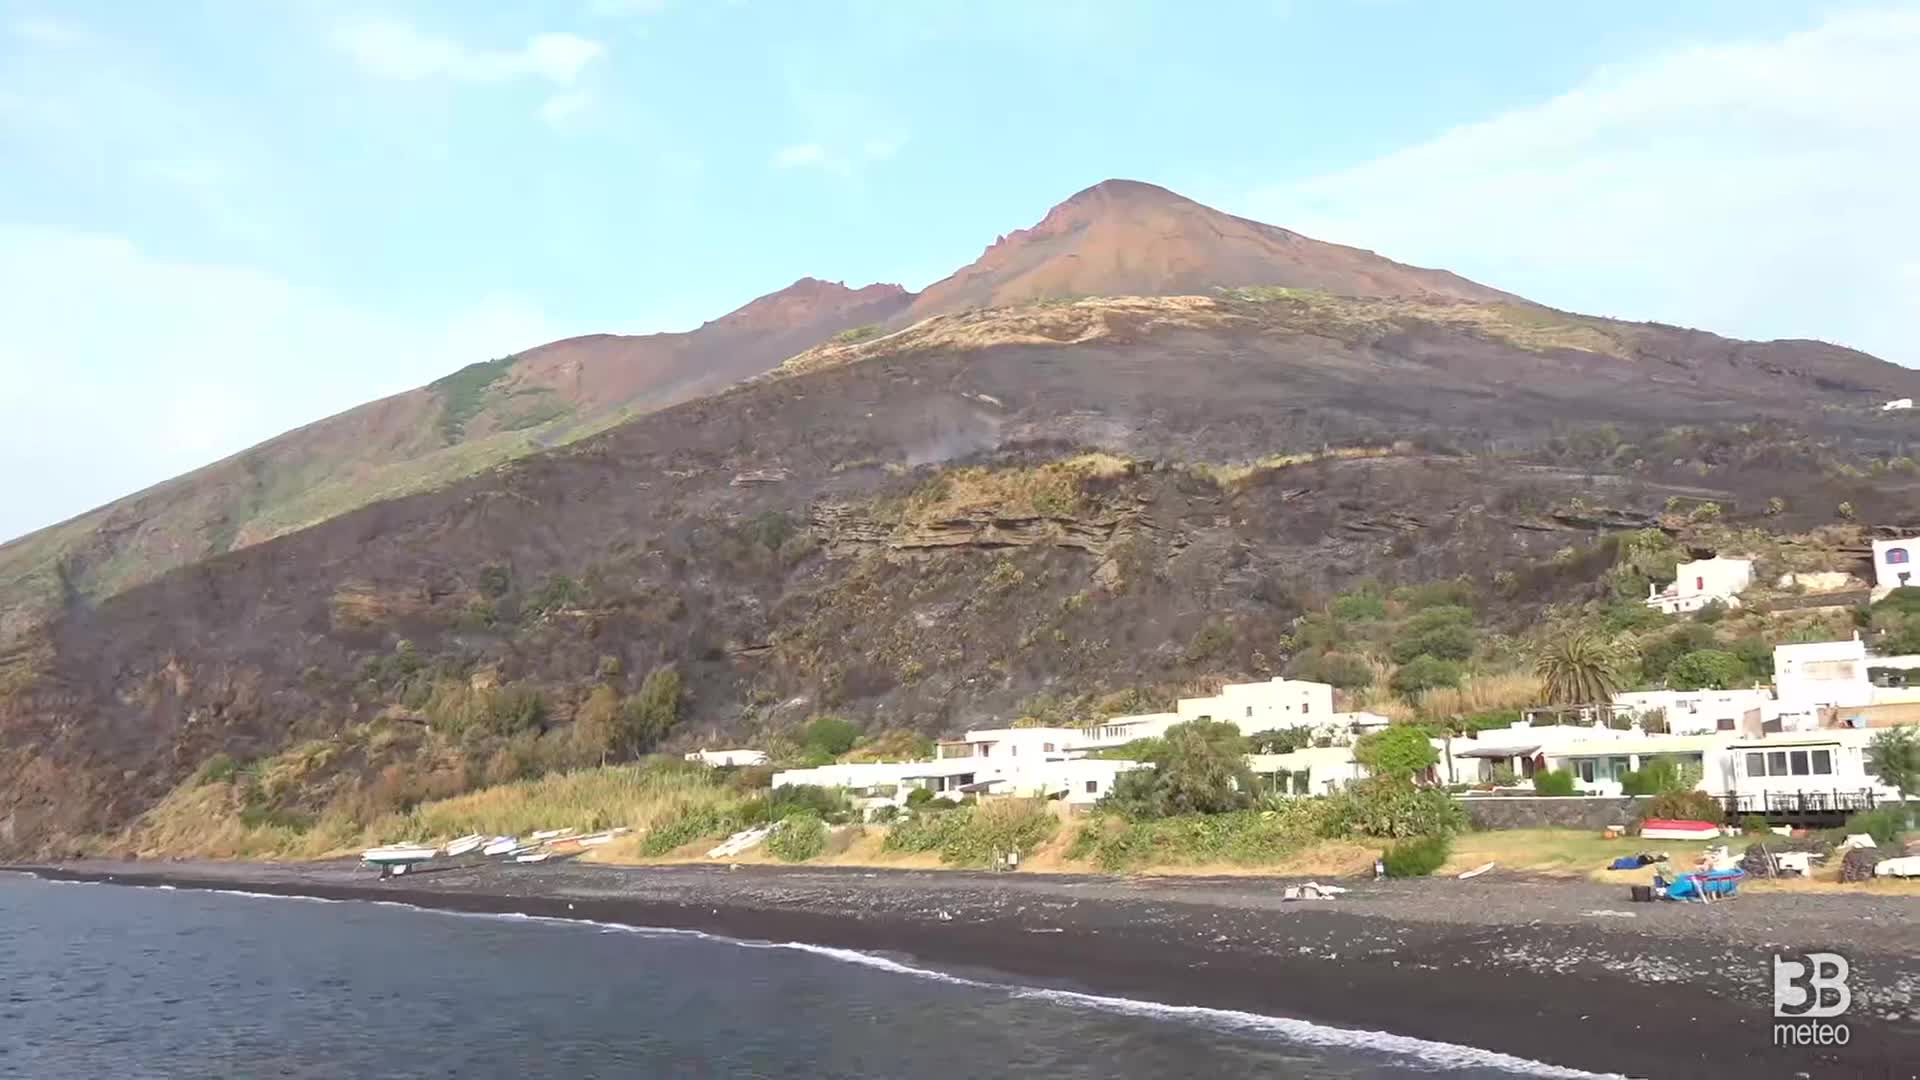 Cronaca diretta - Incendio a Stromboli: canadair a lavoro per bonifica - Video